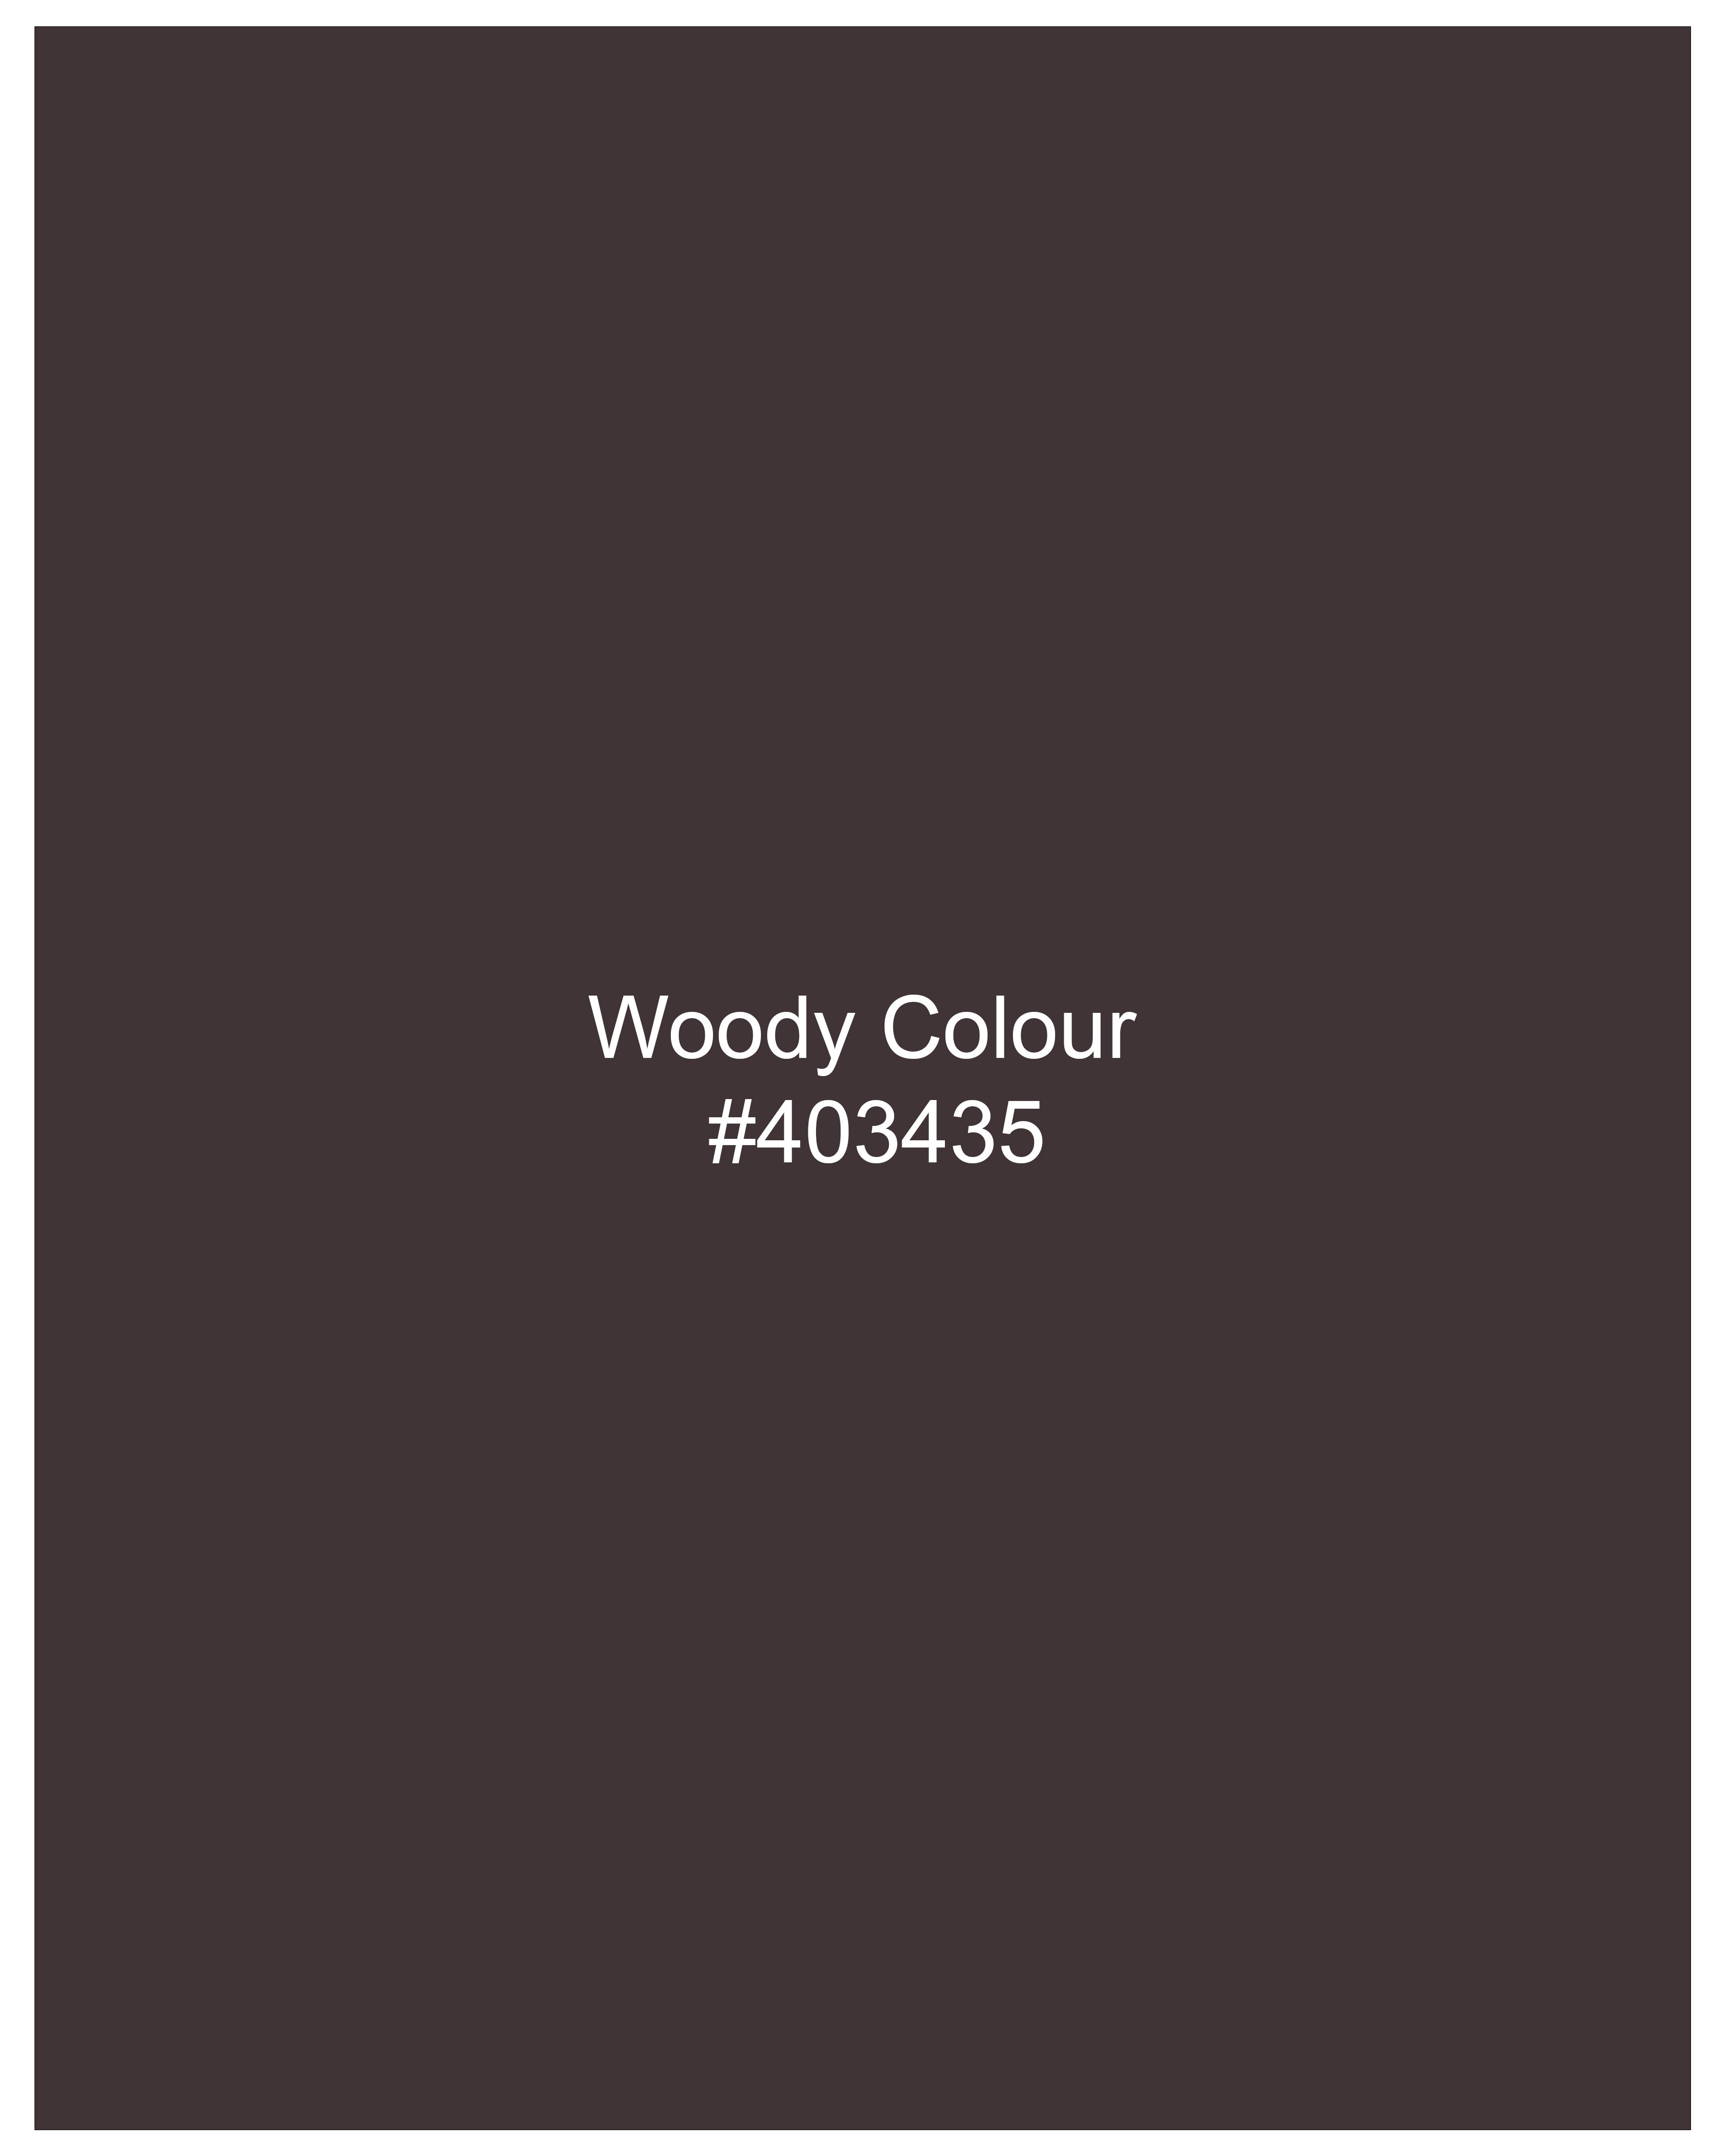 Woody Dark Brown Waistcoat V2711-36, V2711-38, V2711-40, V2711-42, V2711-44, V2711-46, V2711-48, V2711-50, V2711-52, V2711-54, V2711-56, V2711-58, V2711-60